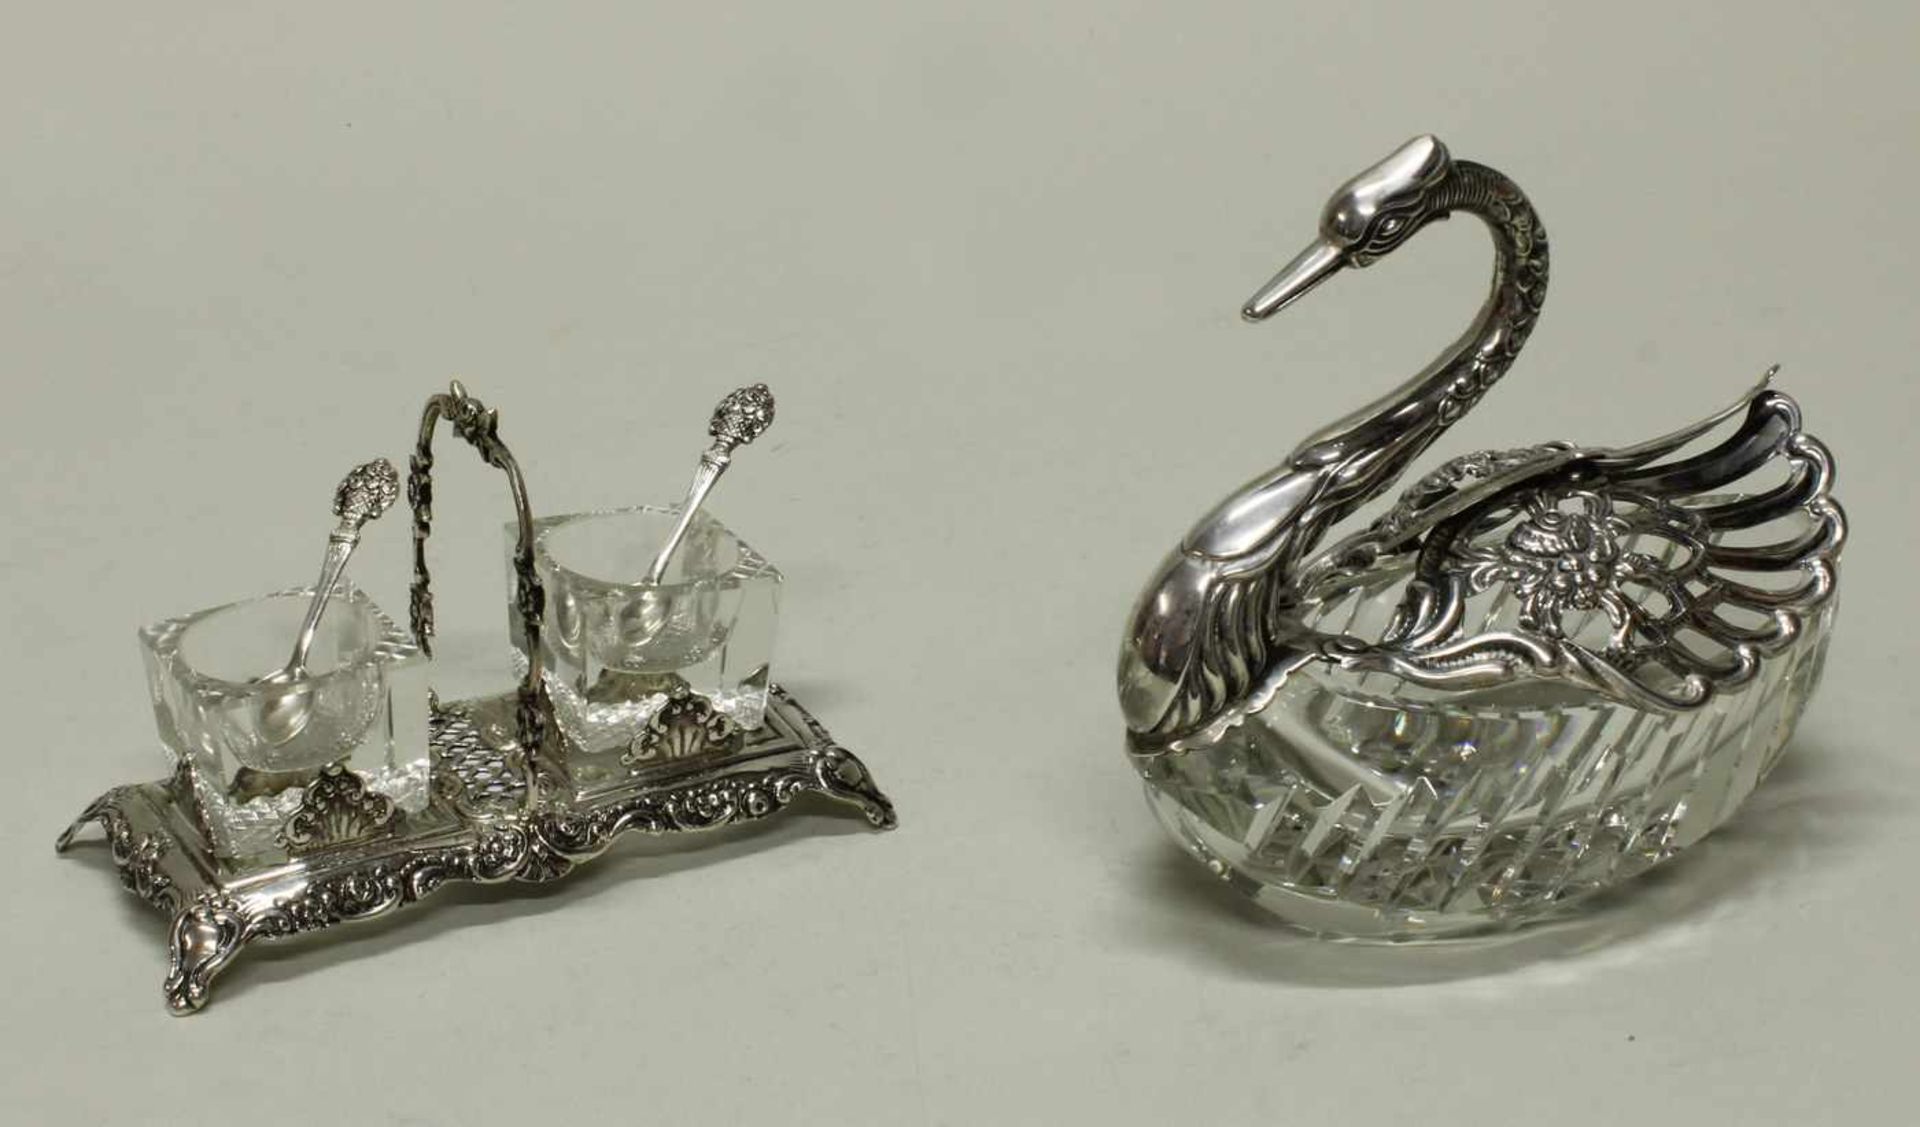 Schale, "Schwan", Silber 835, Korpus aus farblosem Kristallglas, Montierung aus Silber, Flügel